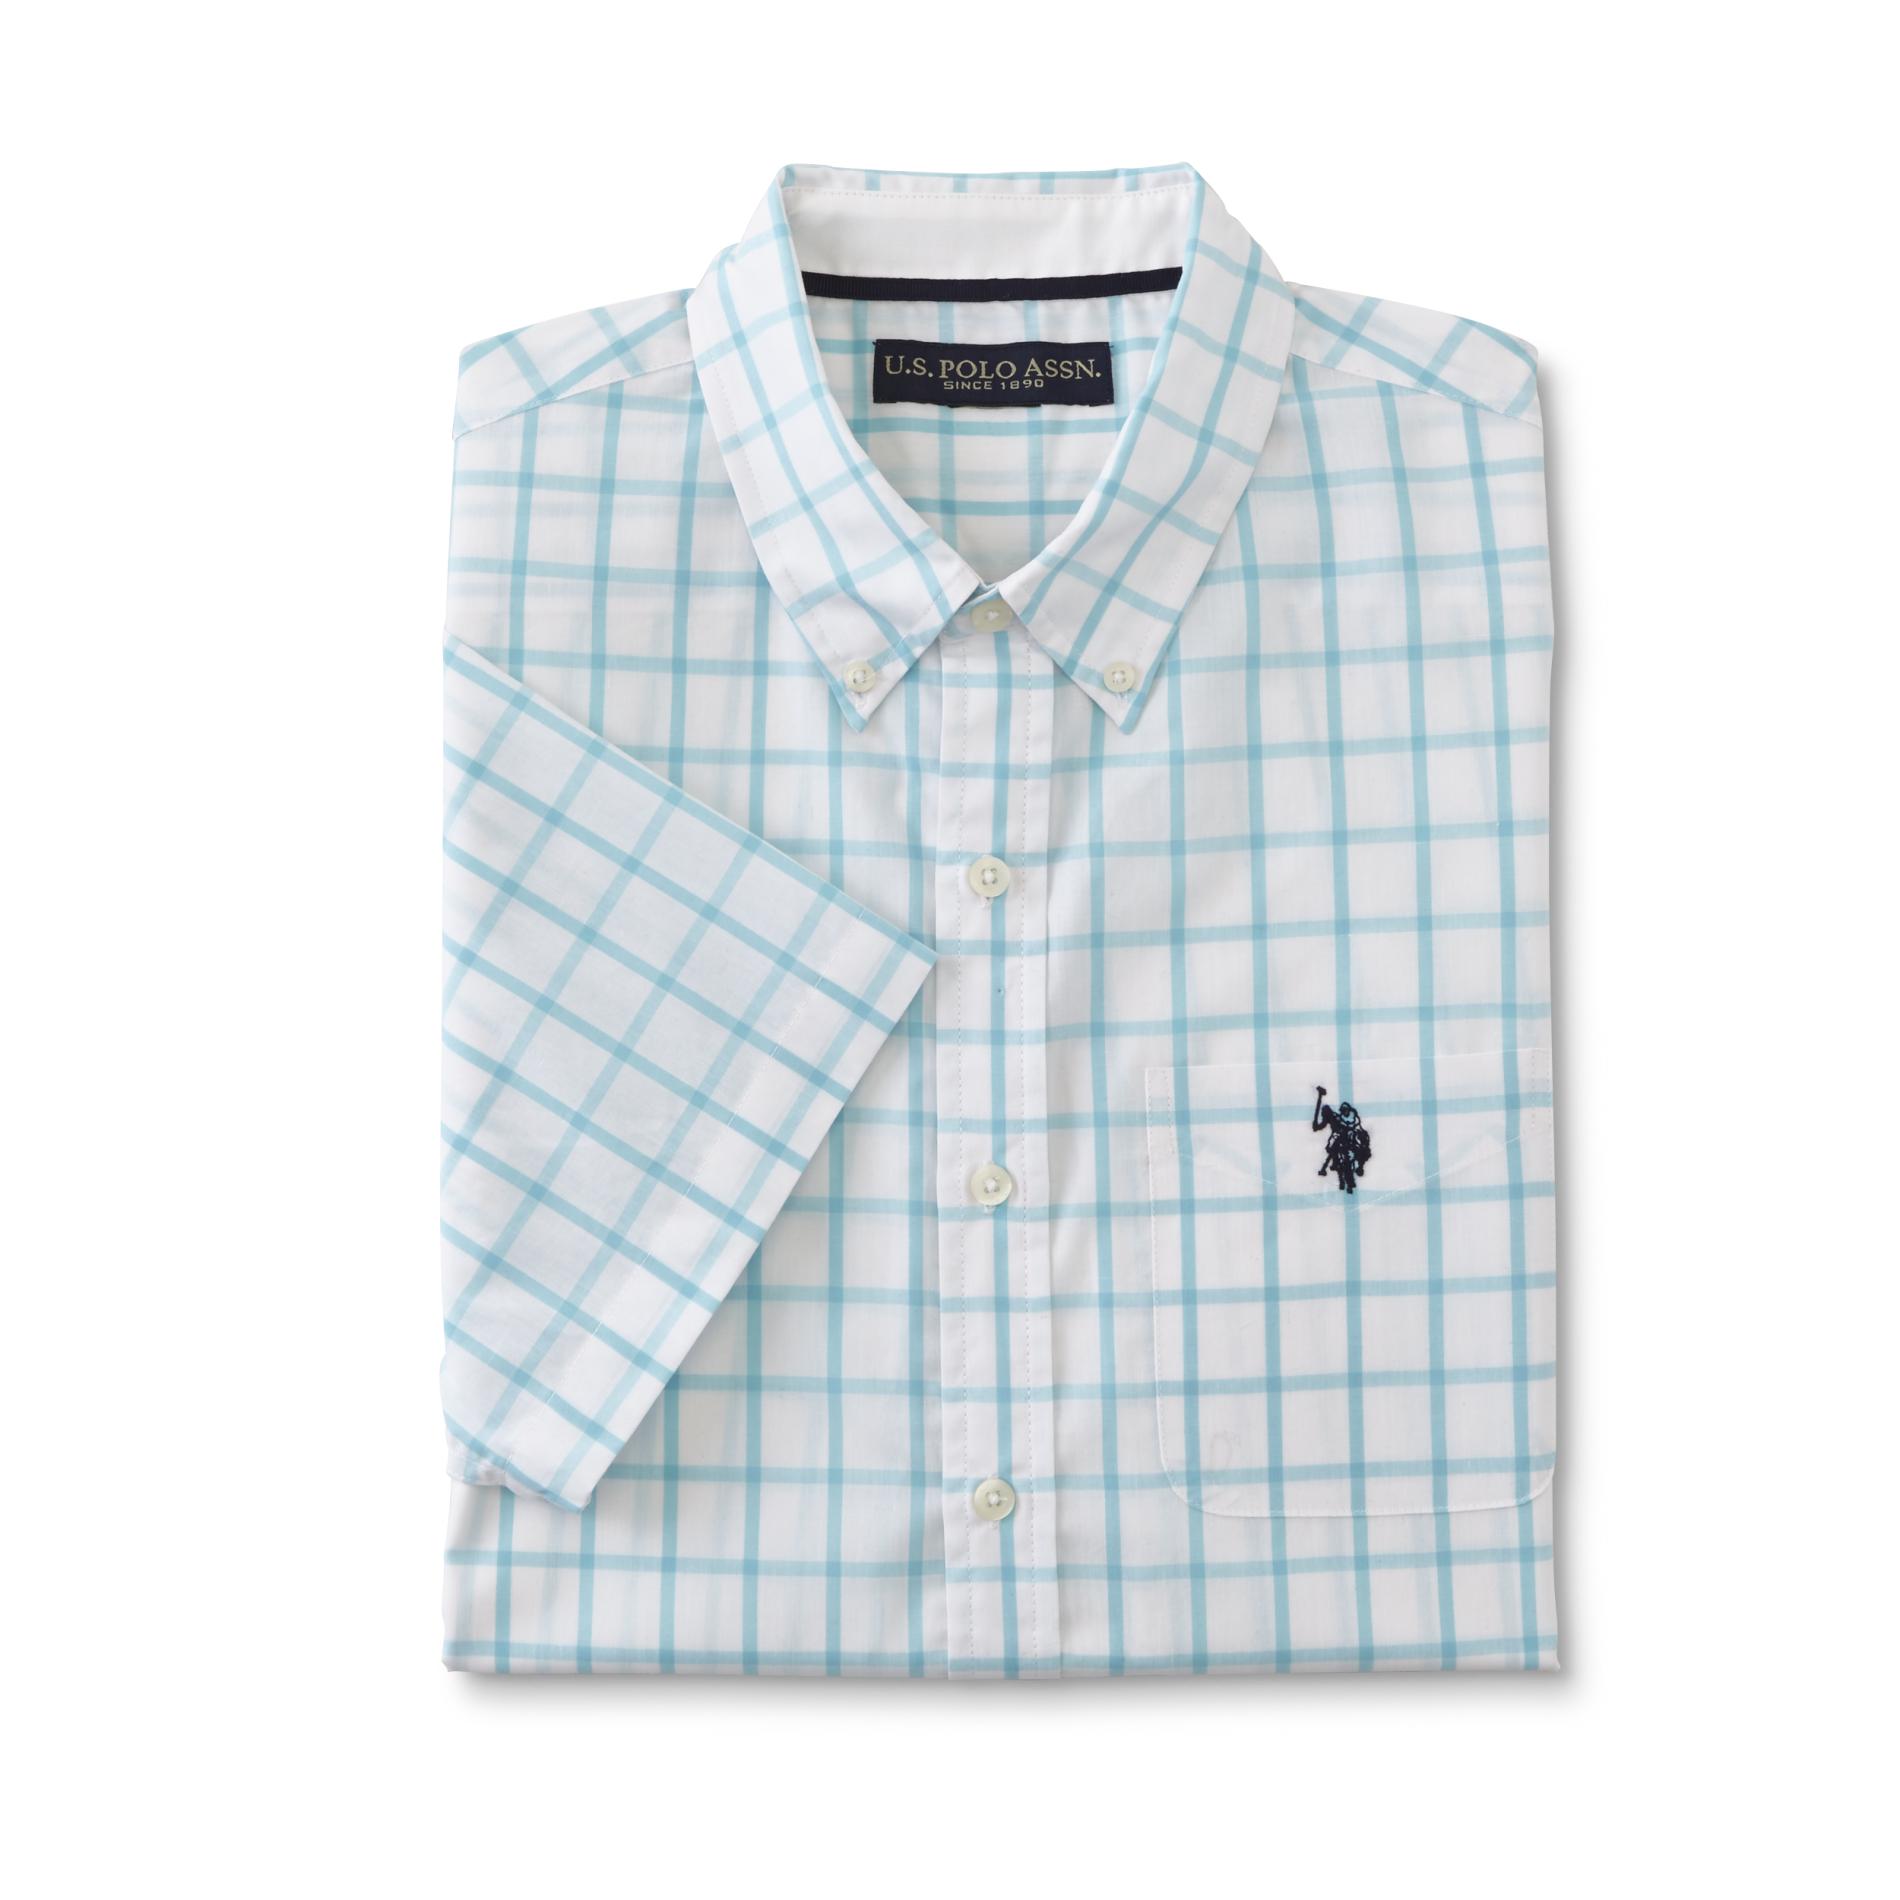 U.S. Polo Assn. Men's Short-Sleeve Shirt - Windowpane